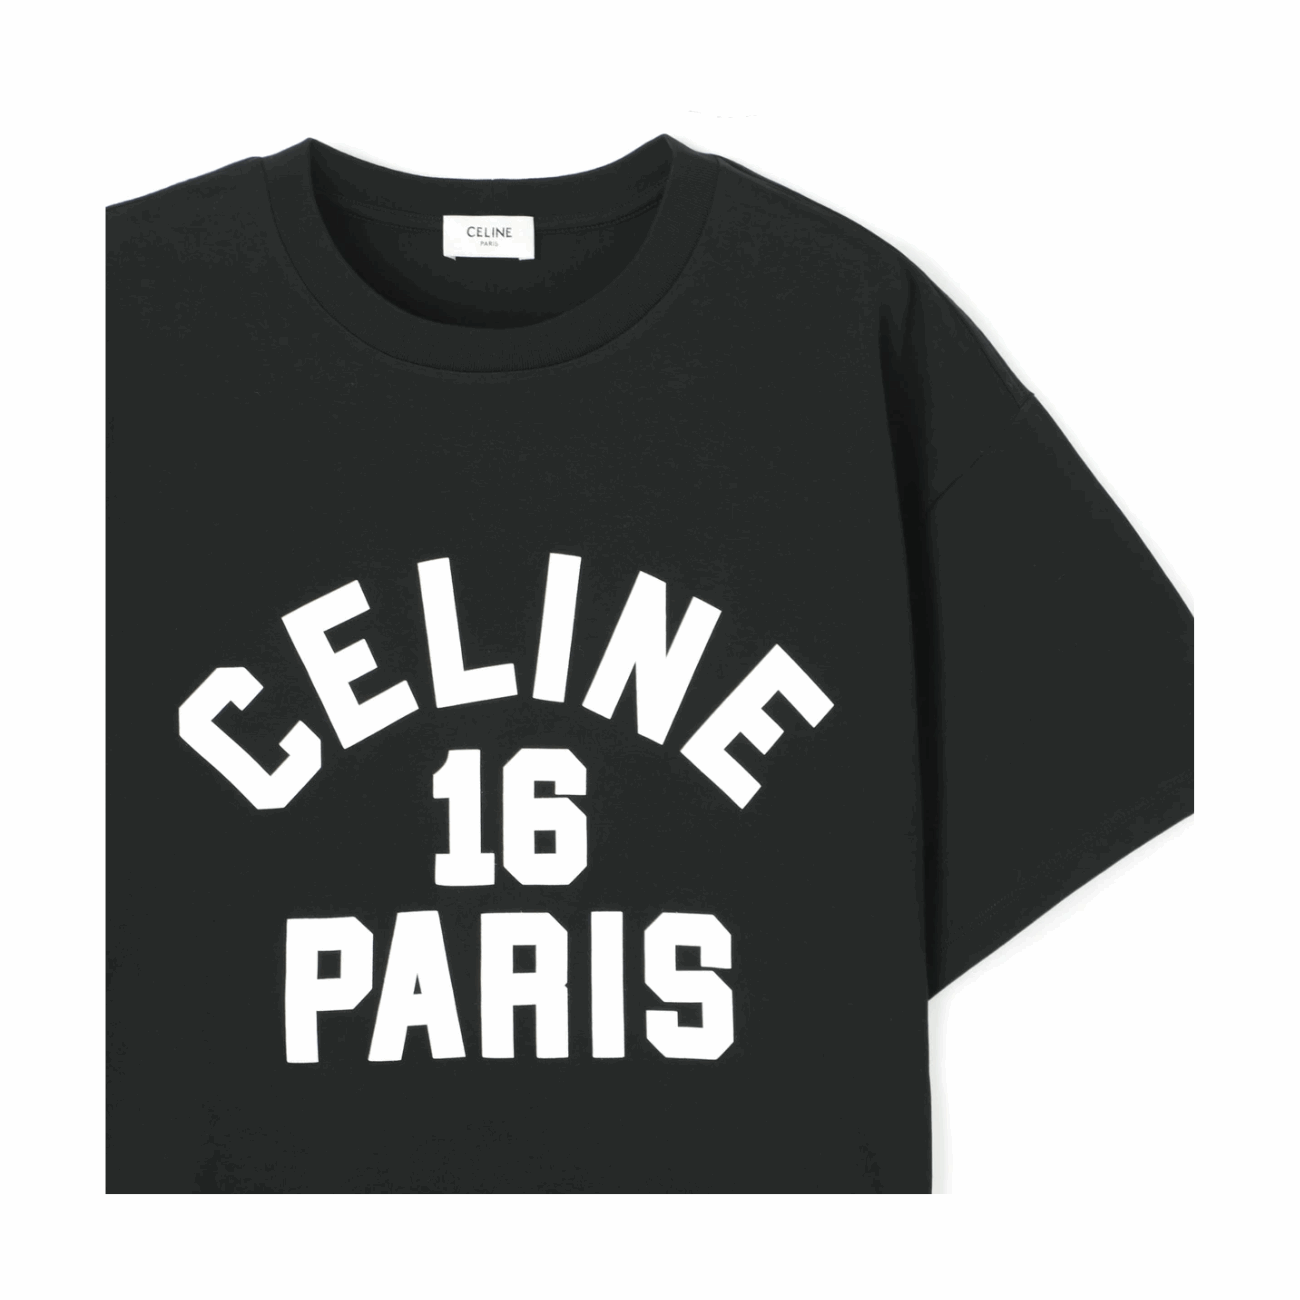 Celine Logo 16 Paris Loose Women's Jersey T-Shirt